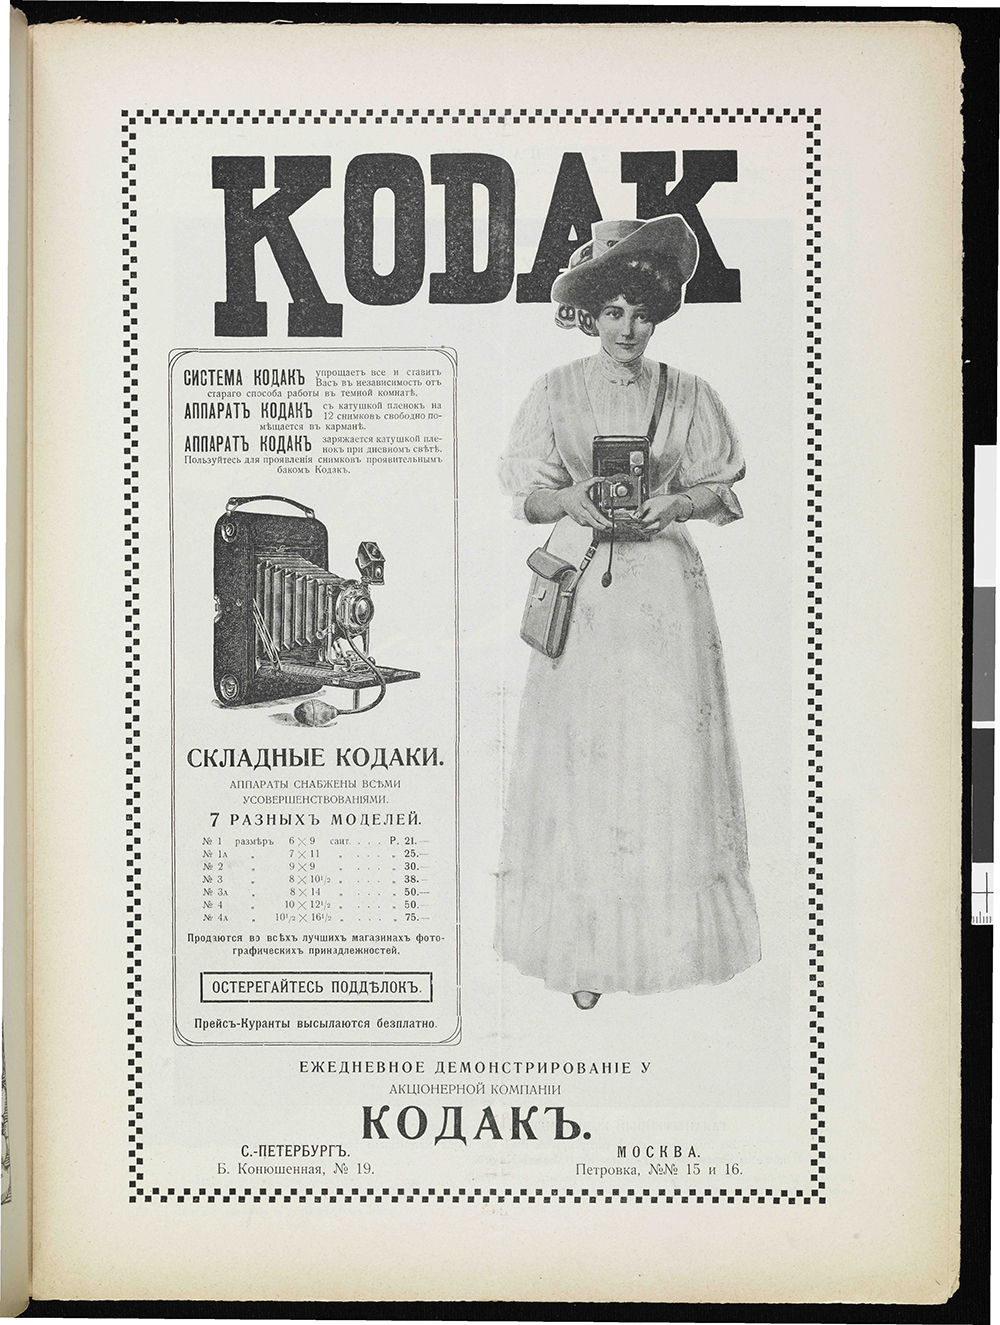 Старая реклама фототехники в дореволюционных журналах и плакатах | Фотография OKEBLOG